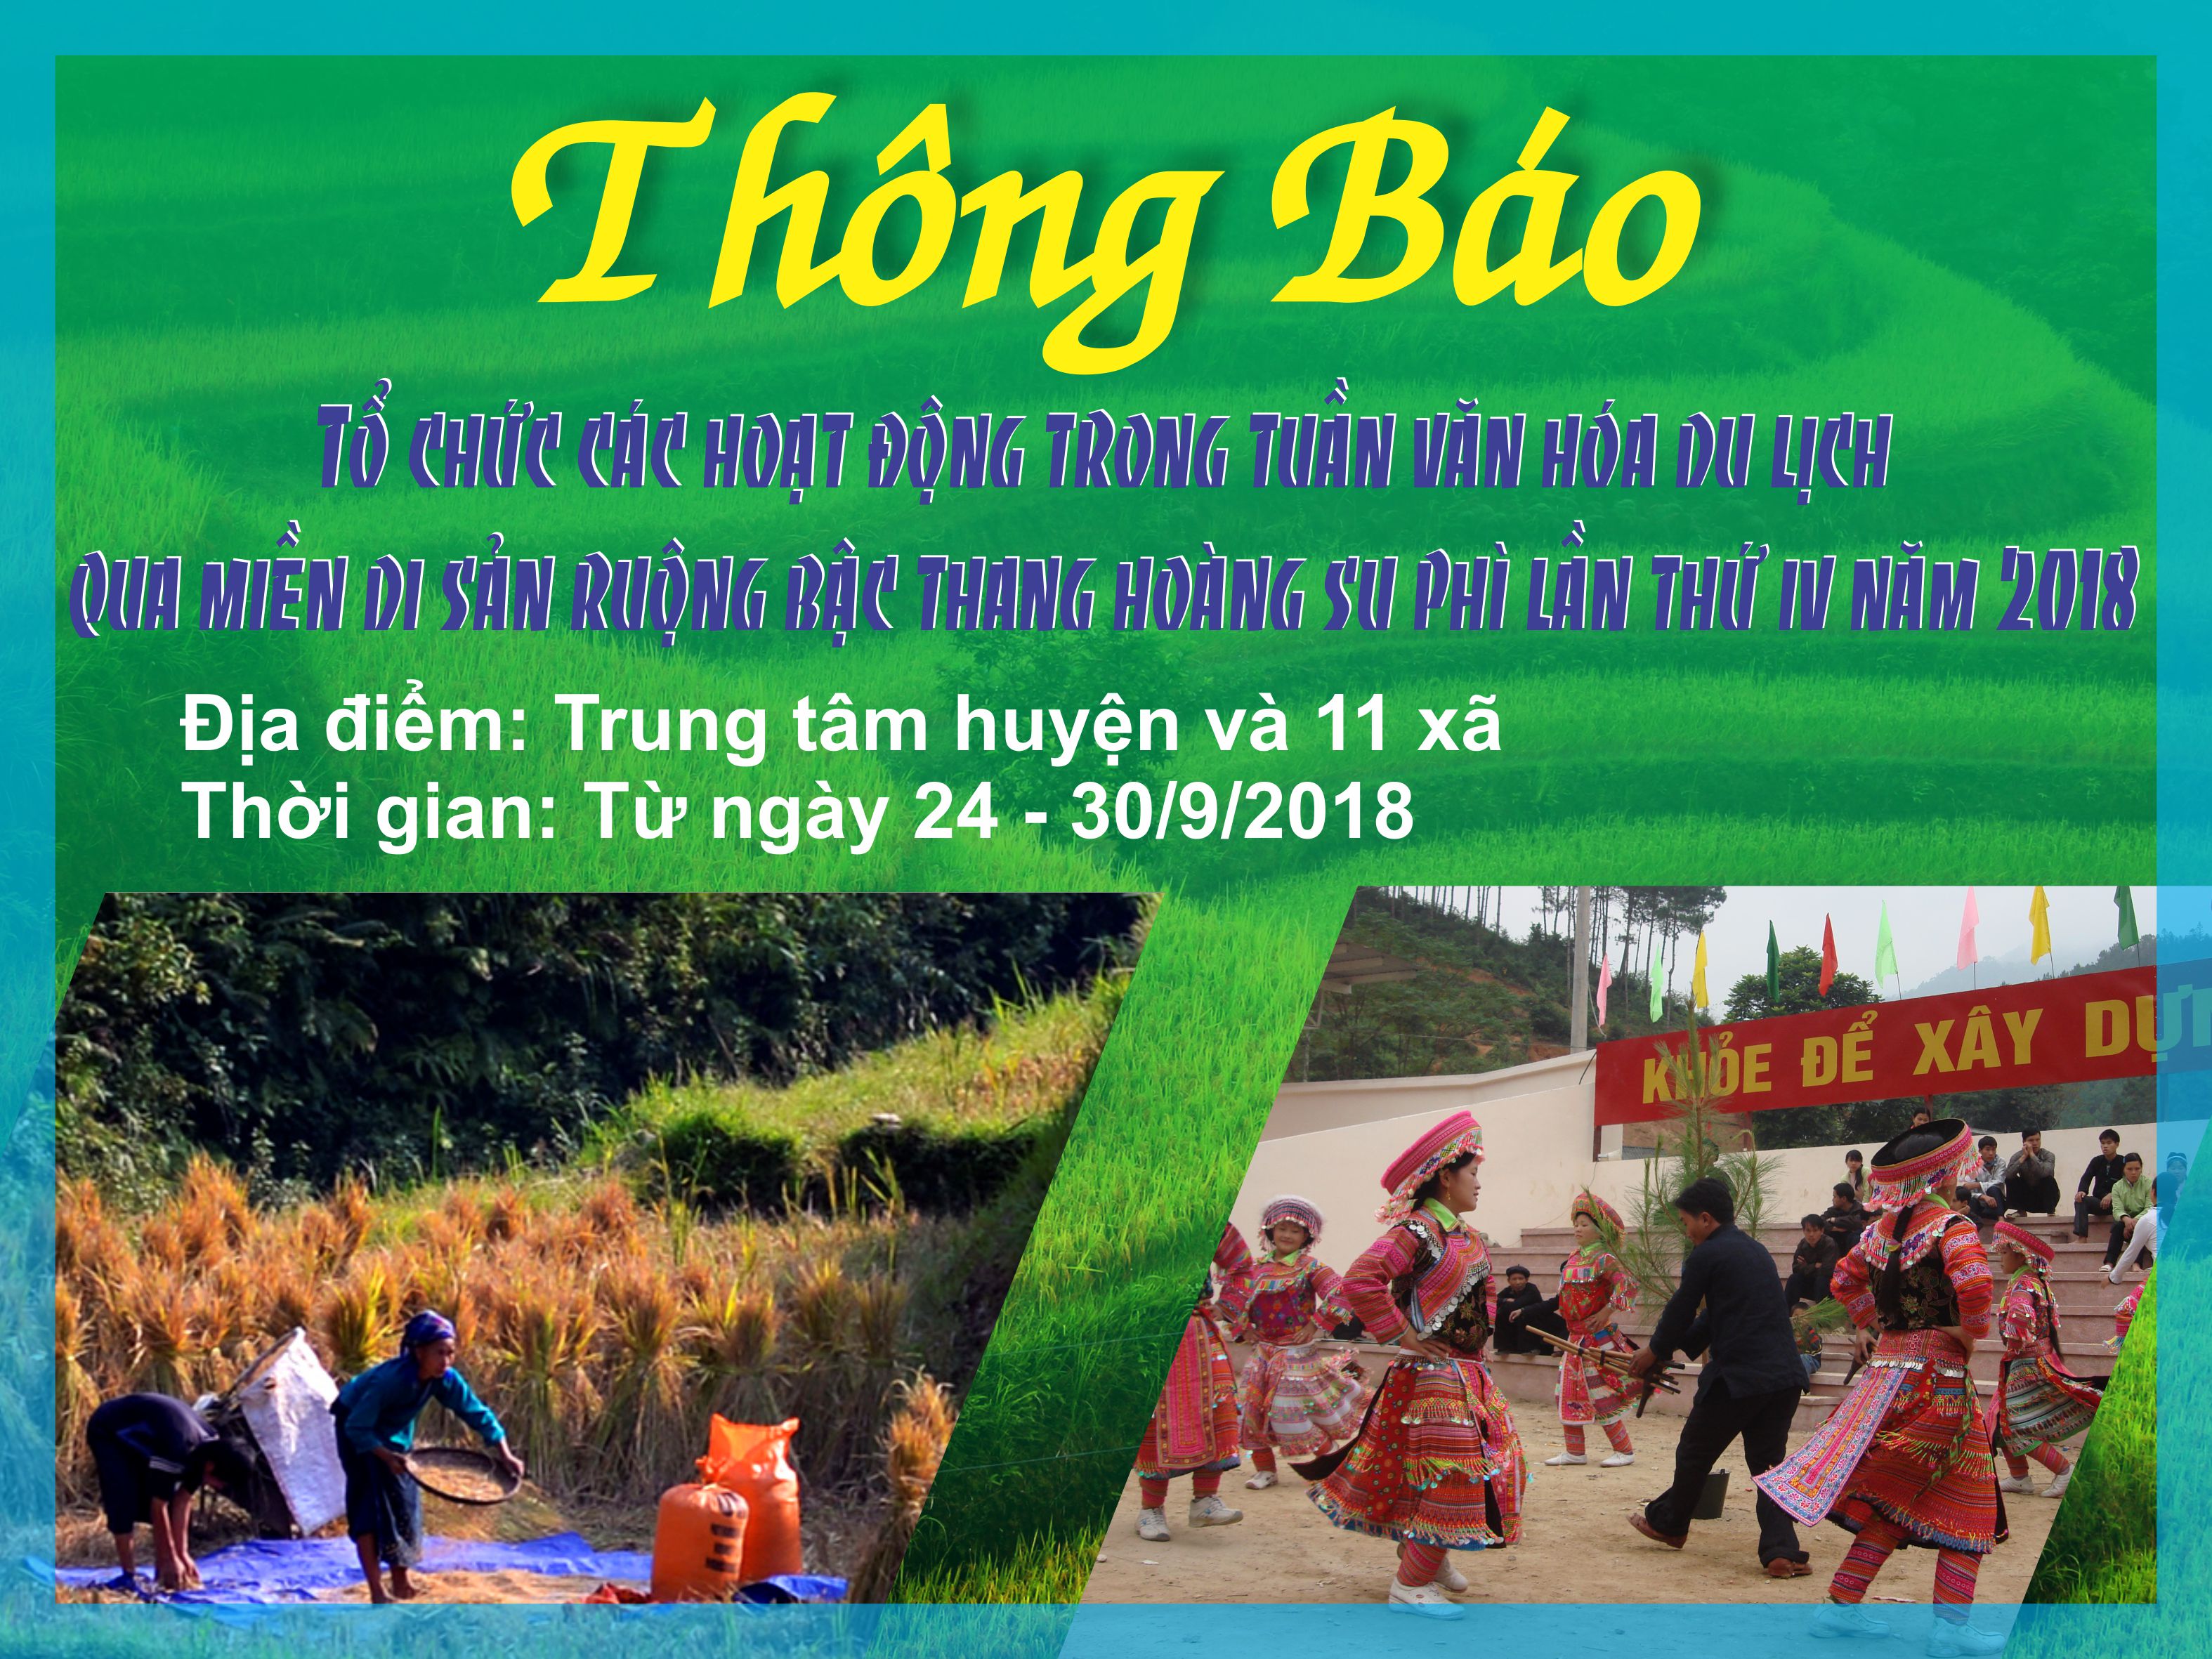 Thành phố Hà Giang tập huấn khởi nghiệp, khởi sự kinh doanh cho cán bộ, đoàn viên, hội viên và nhân dân